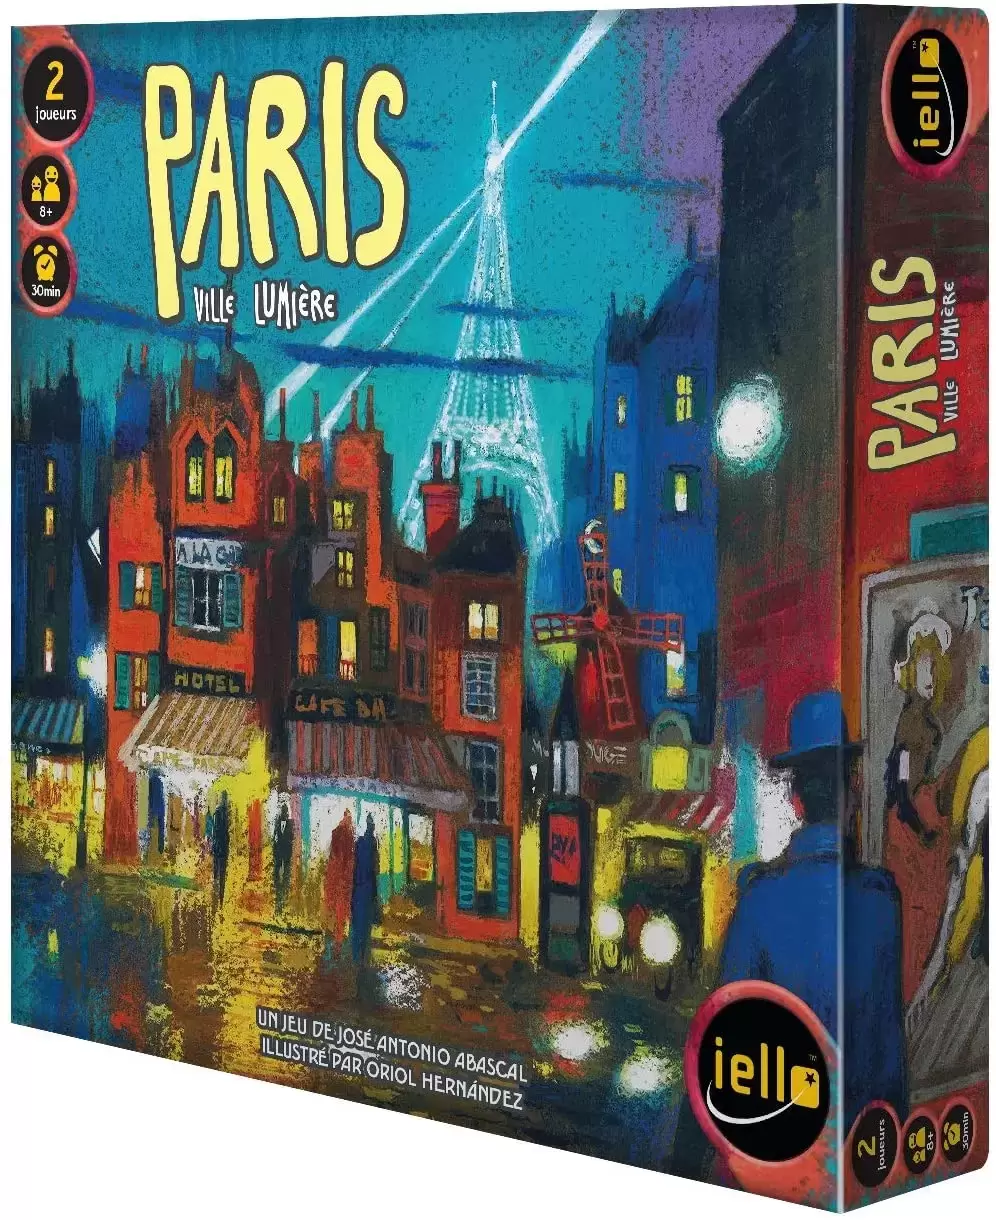 Iello - Paris Ville lumière